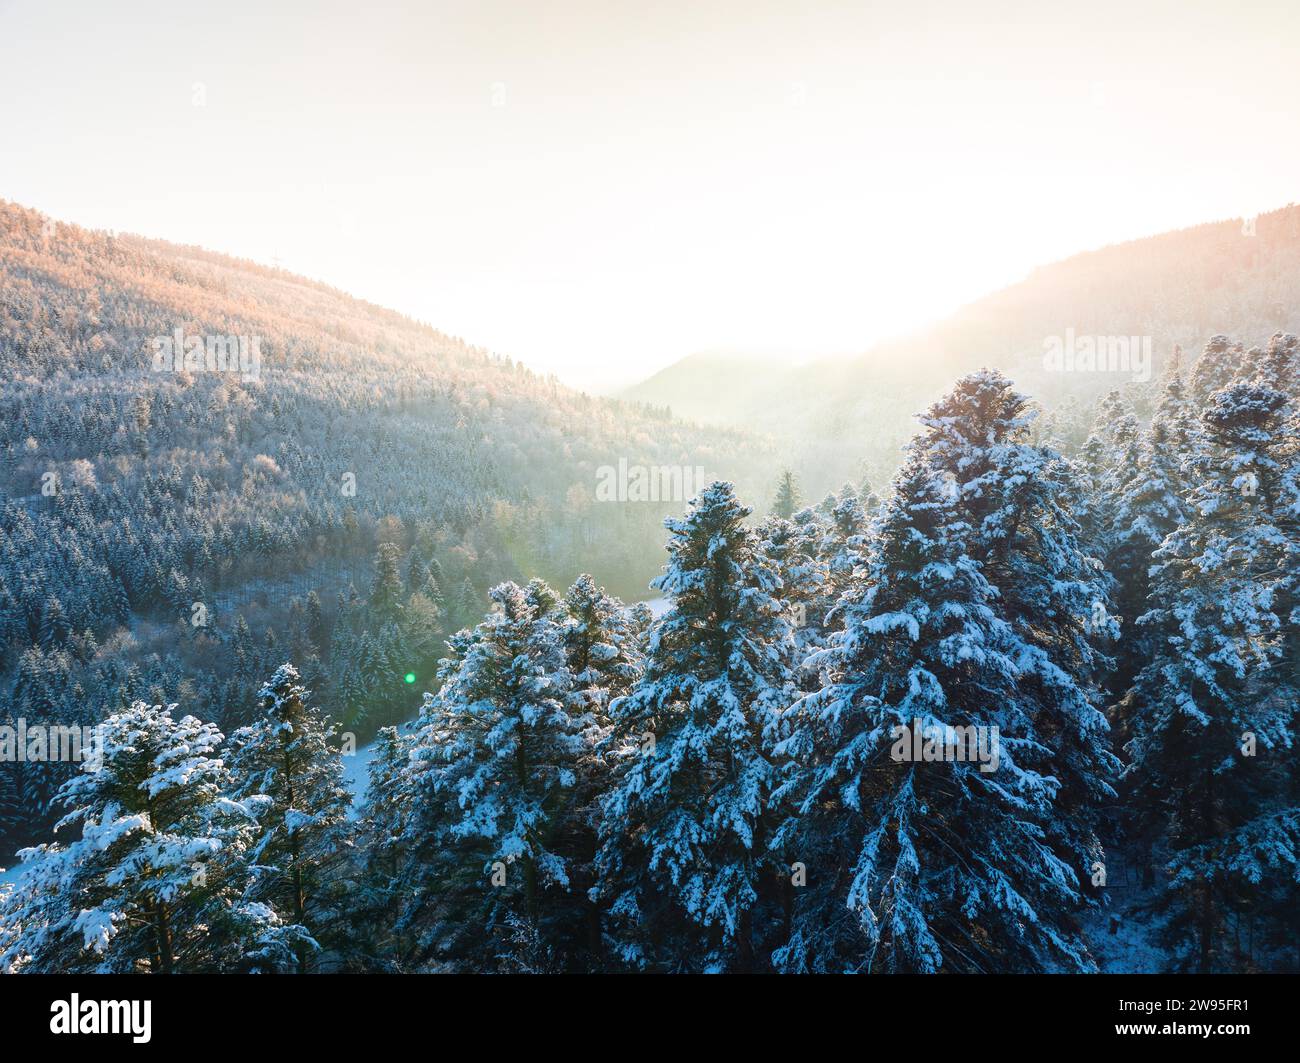 Il sole nascente bagna la foresta innevata e le montagne in una luce dorata, la Foresta Nera di Dobel, Germania Foto Stock